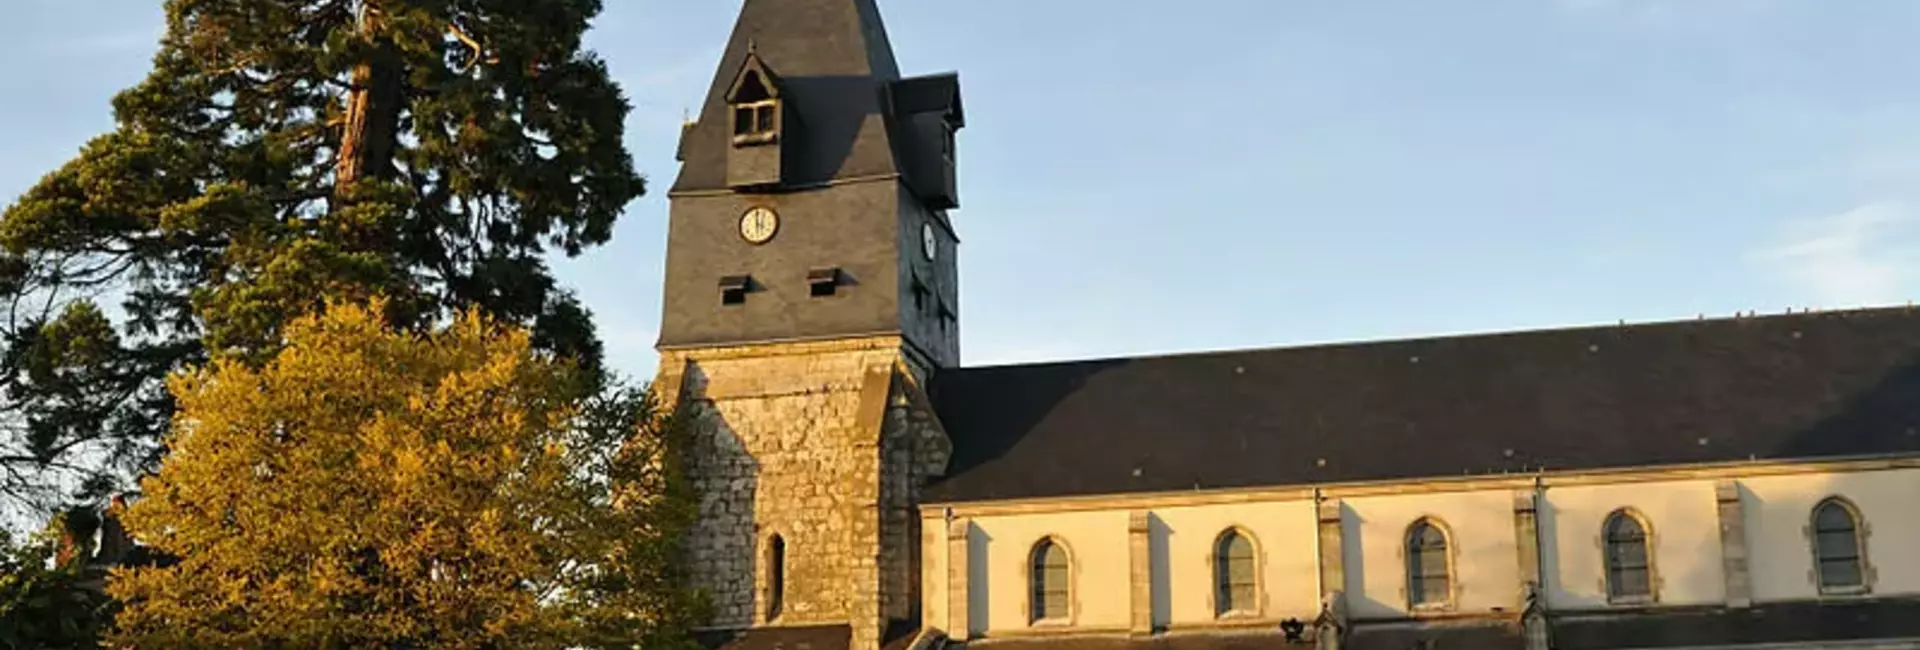 Informations administrative de la mairie de Aschères-le-Marché (45) Loiret